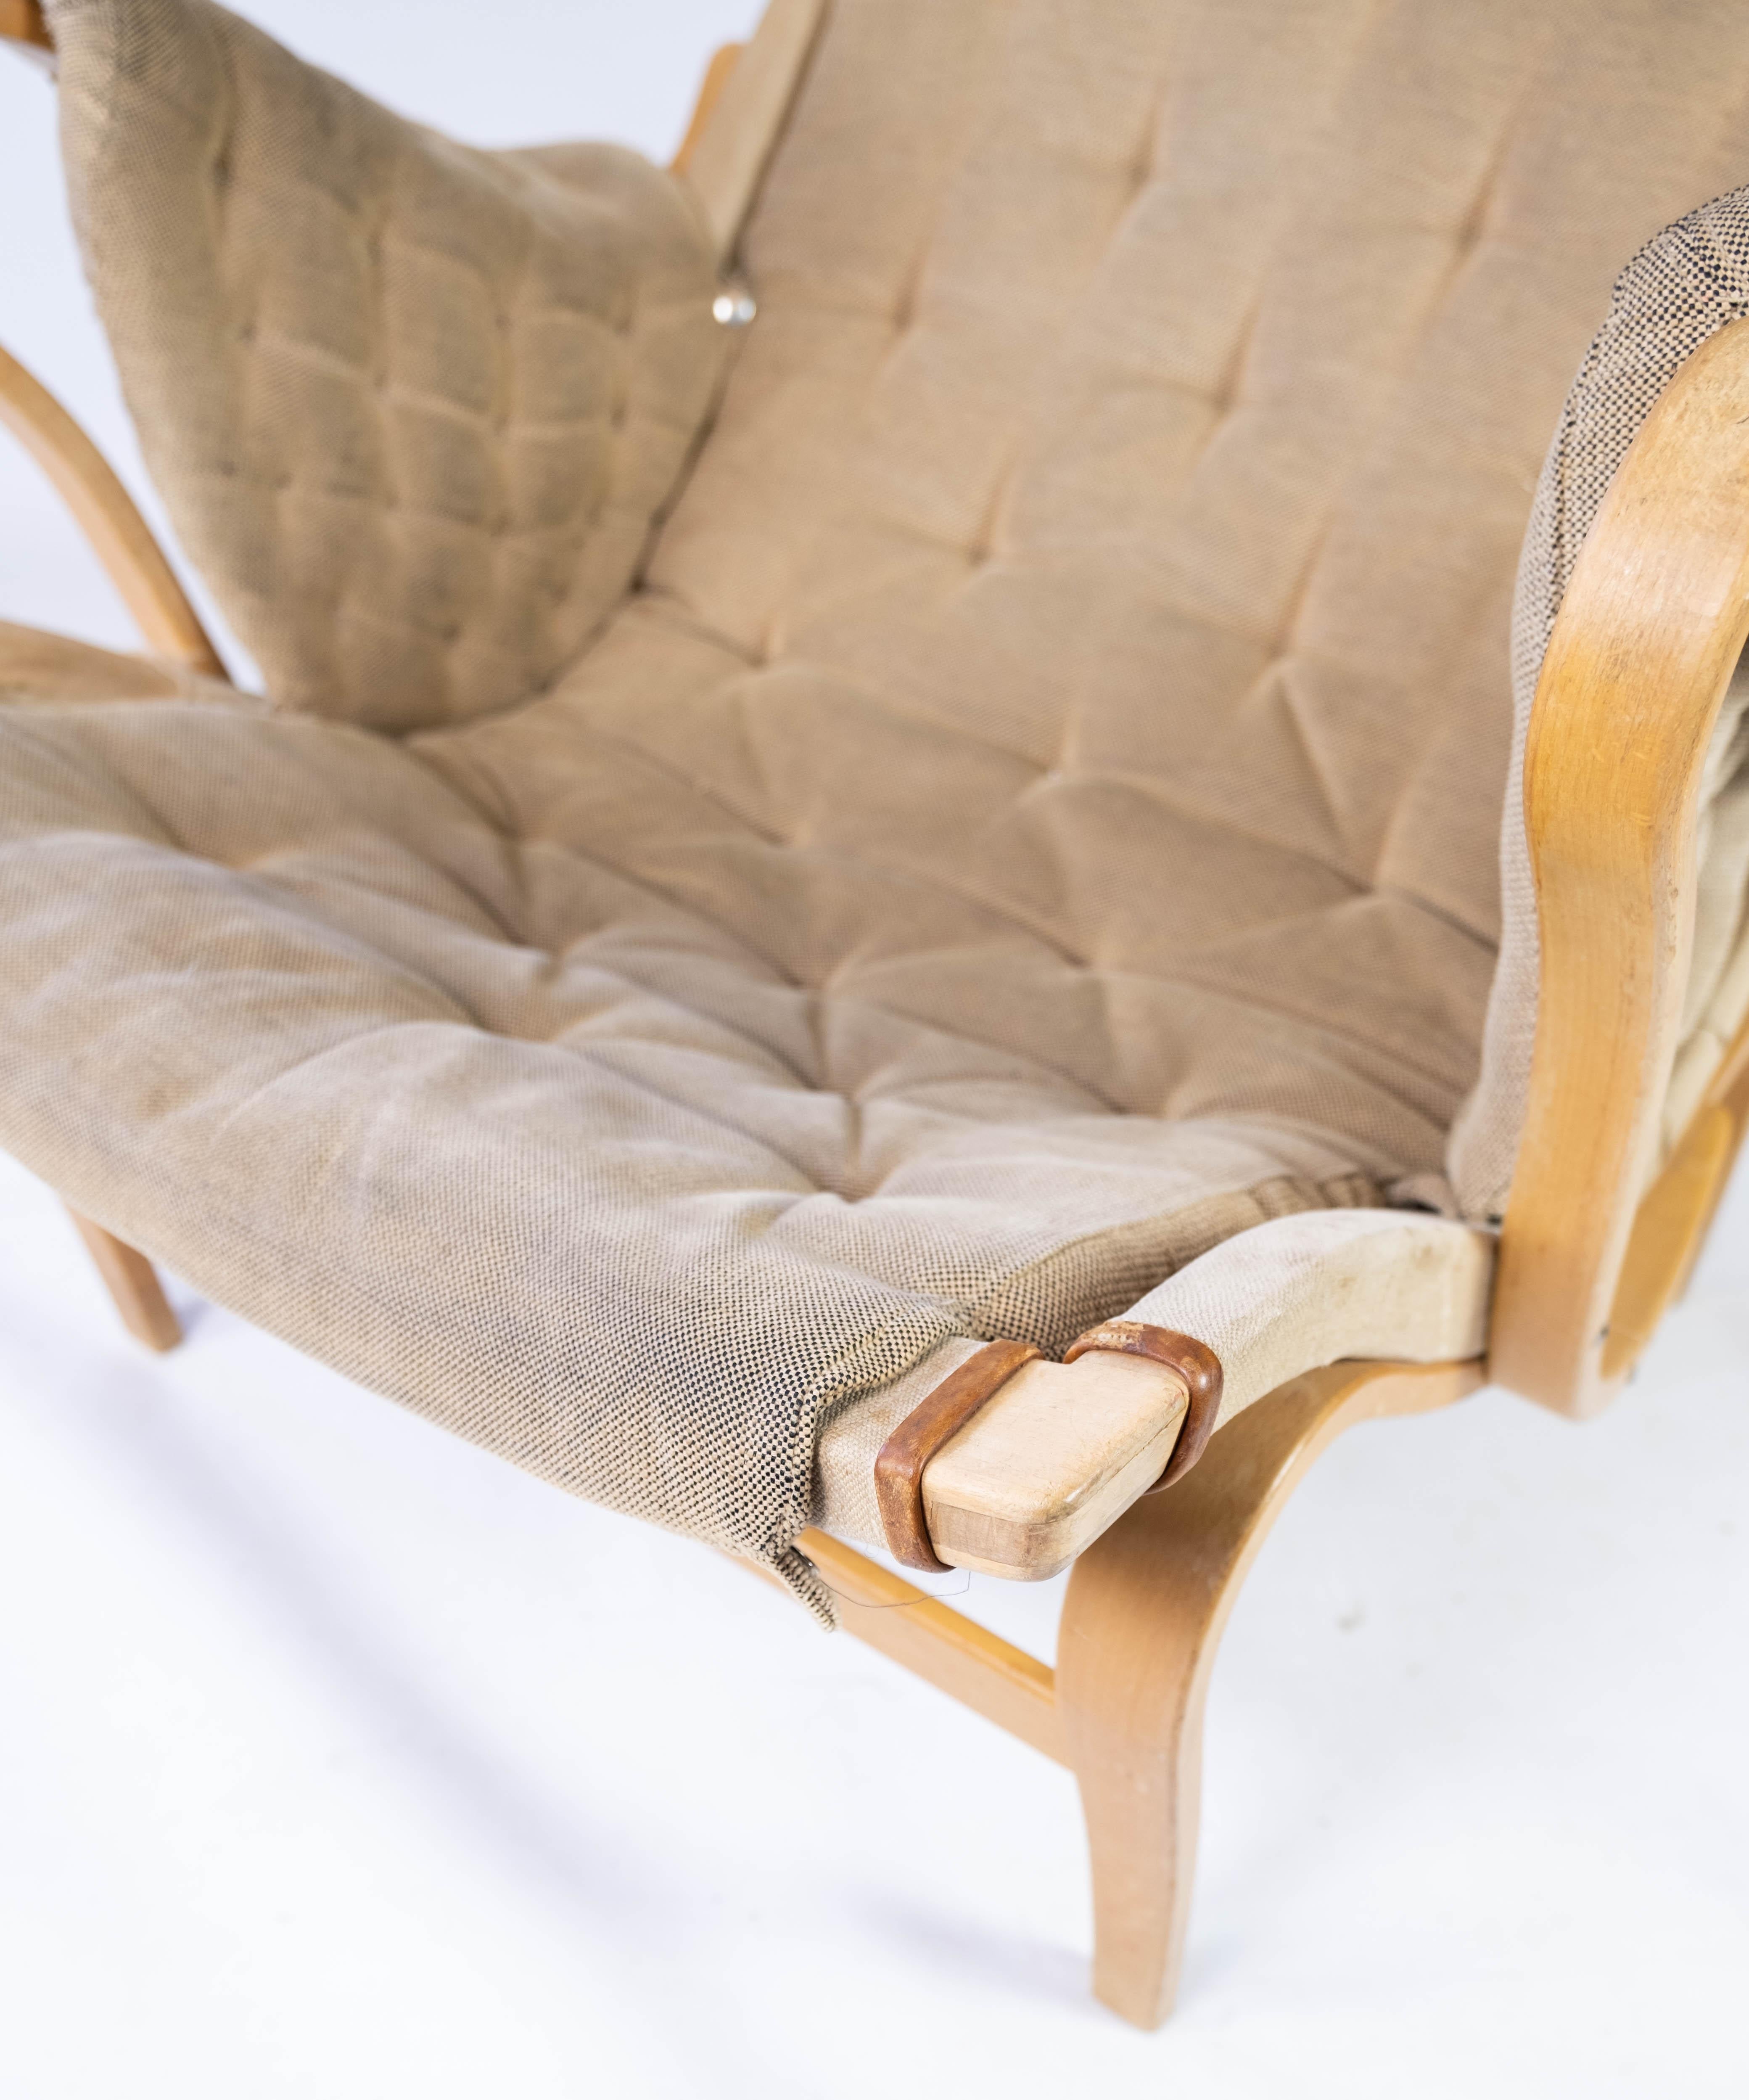 Der von Bruno Mathsson entworfene und von Dux in den 1960er Jahren hergestellte Sessel Pernilla ist ein Beispiel für skandinavisches Möbeldesign. Dieser Stuhl mit seinem charakteristischen, geschwungenen Holzrahmen und der organisch geformten